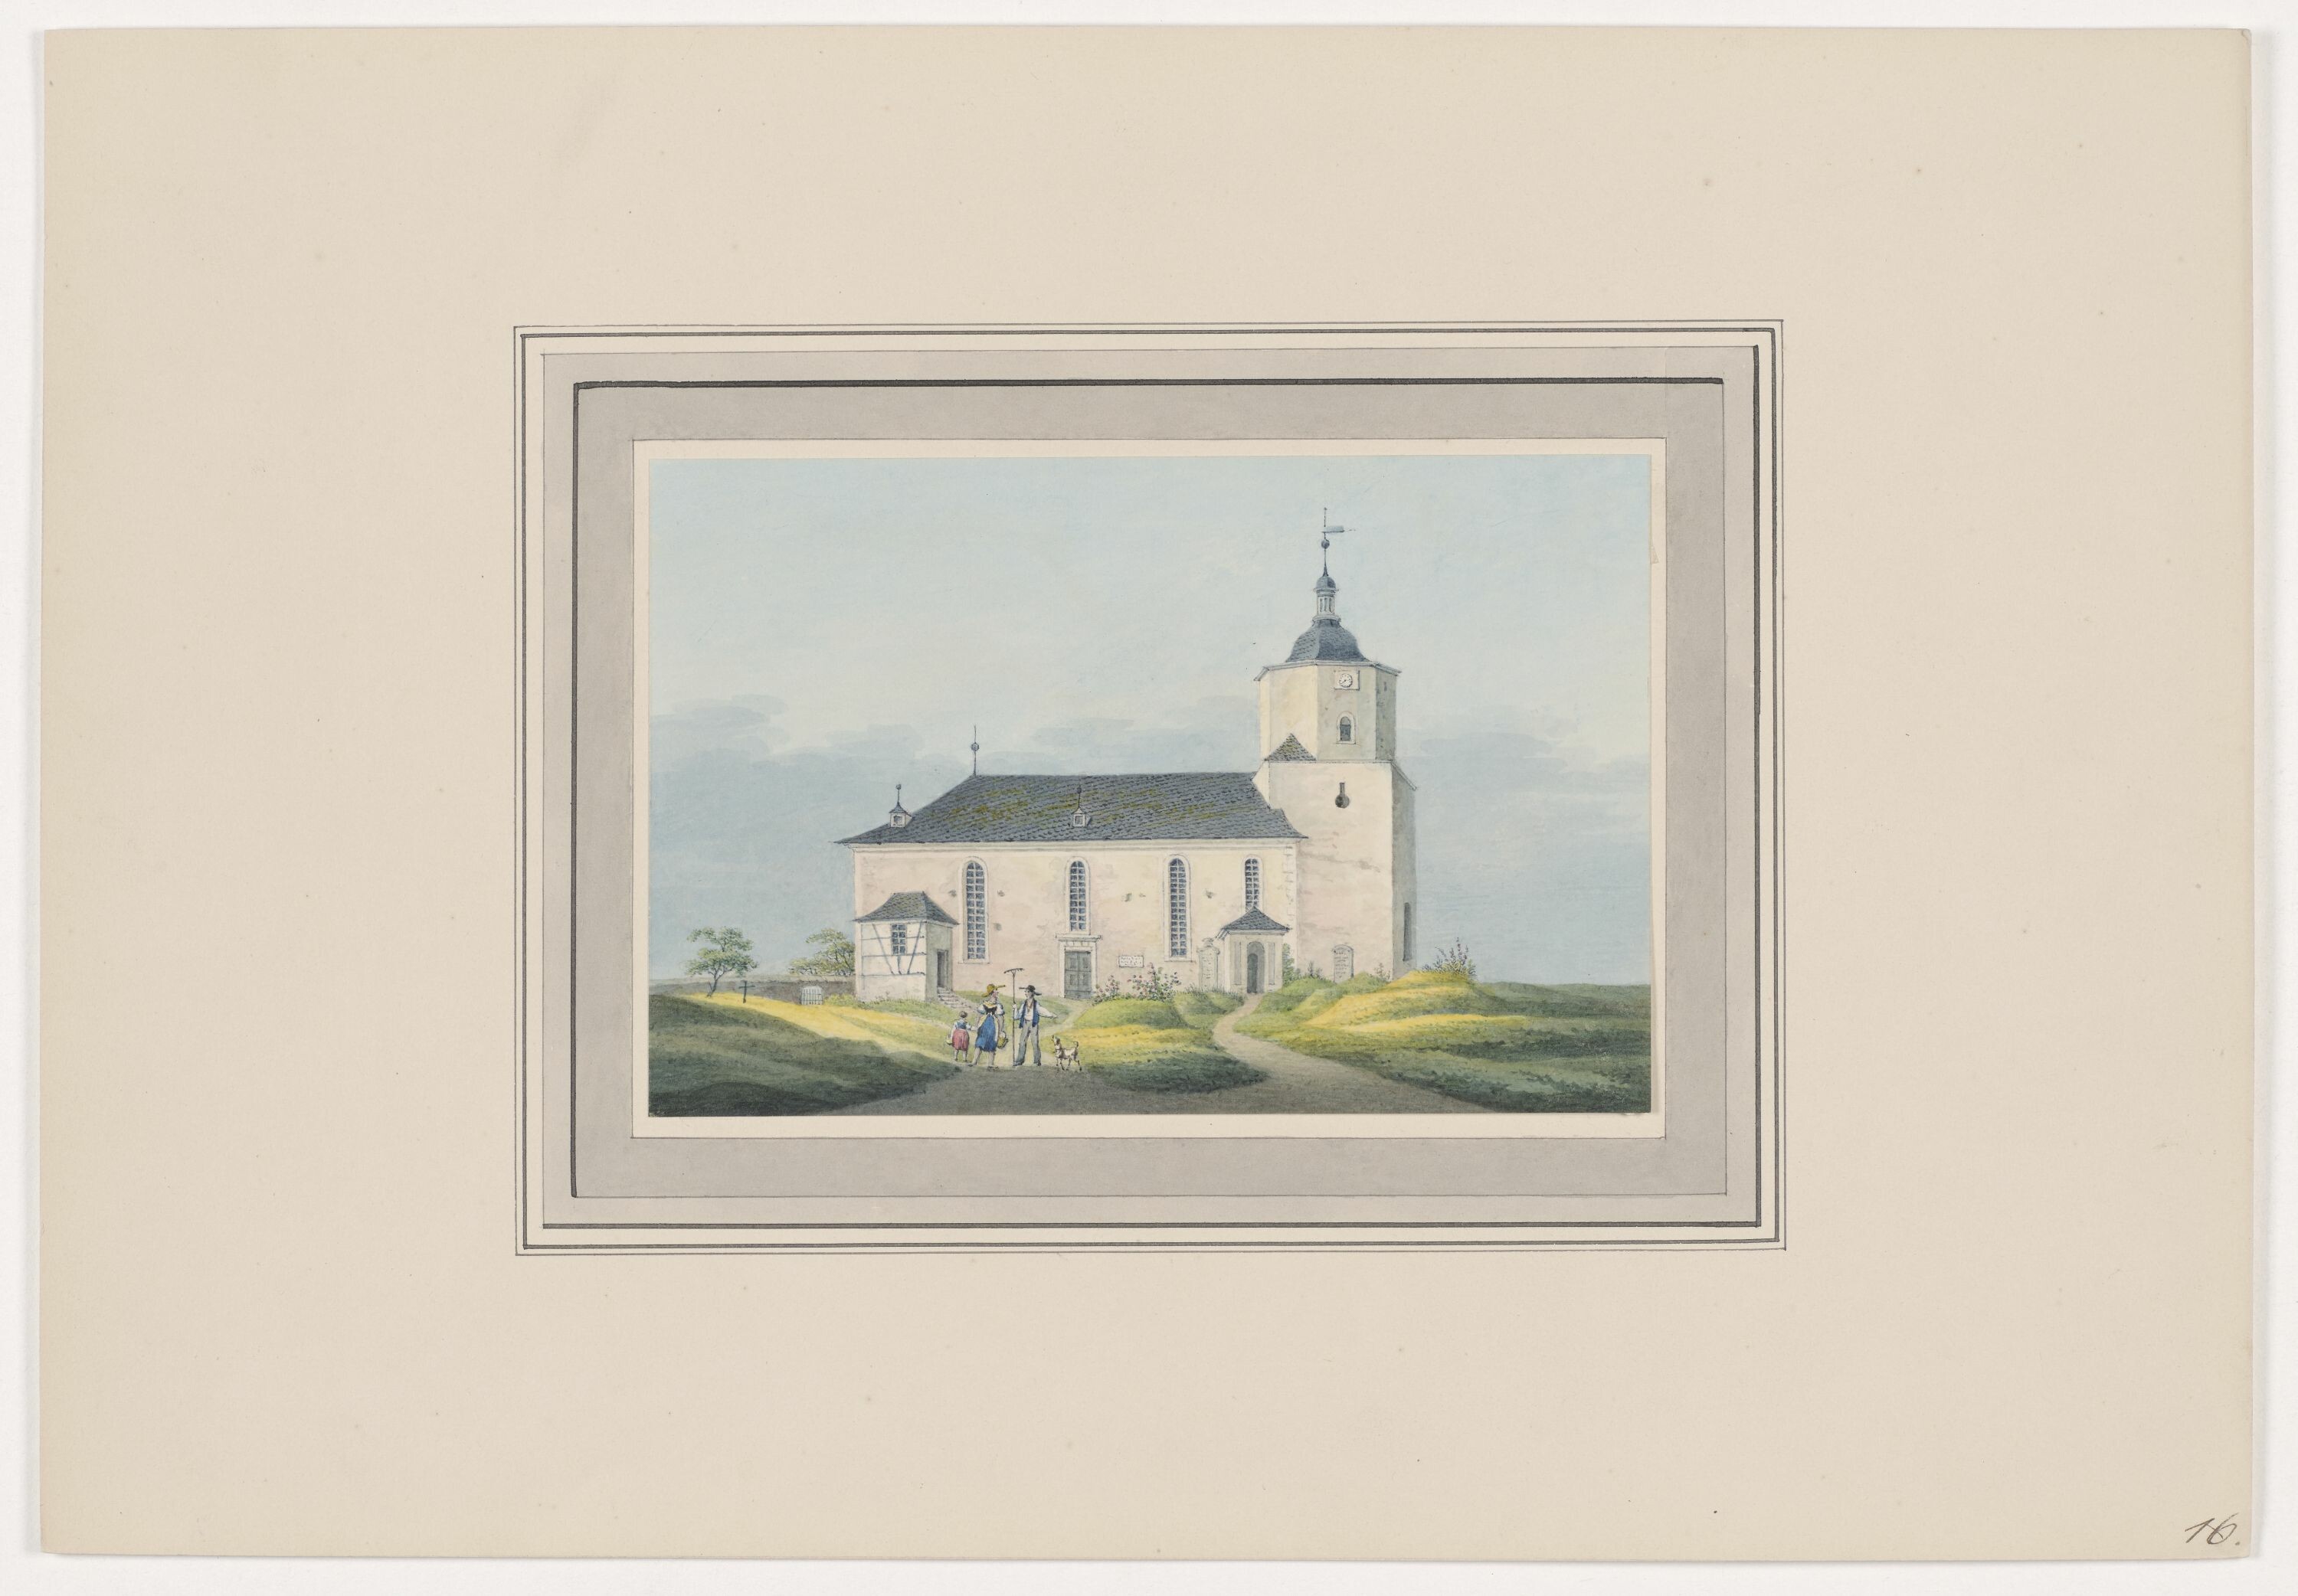 Kirche zu Zschocken, aus Mappe: Dorfkirchen der Ephorie Zwickau, Blatt 16 (KUNSTSAMMLUNGEN ZWICKAU Max-Pechstein-Museum RR-F)